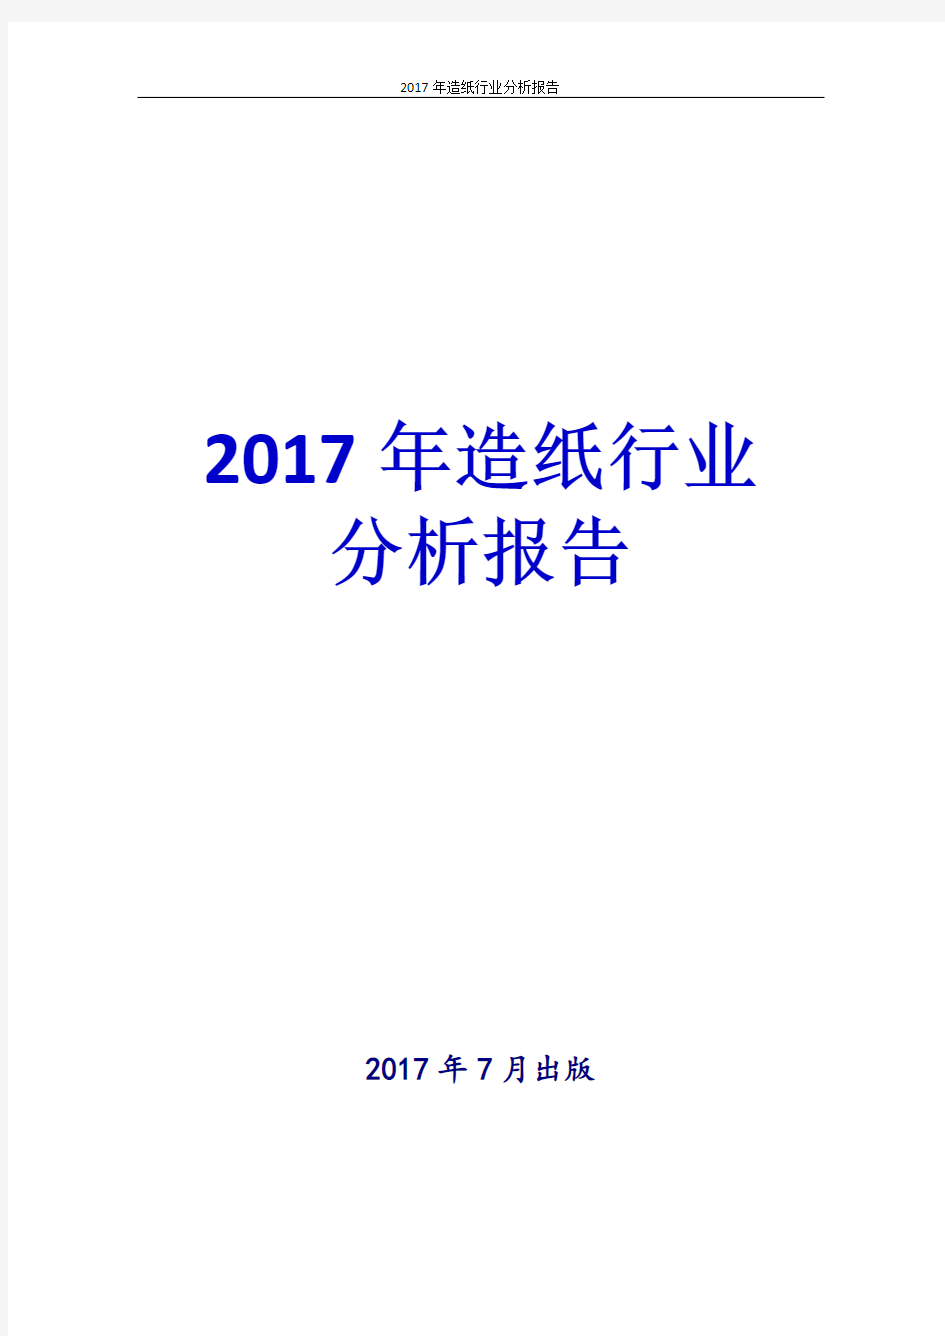 2017-2018年造纸行业发展趋势未来前景分析报告